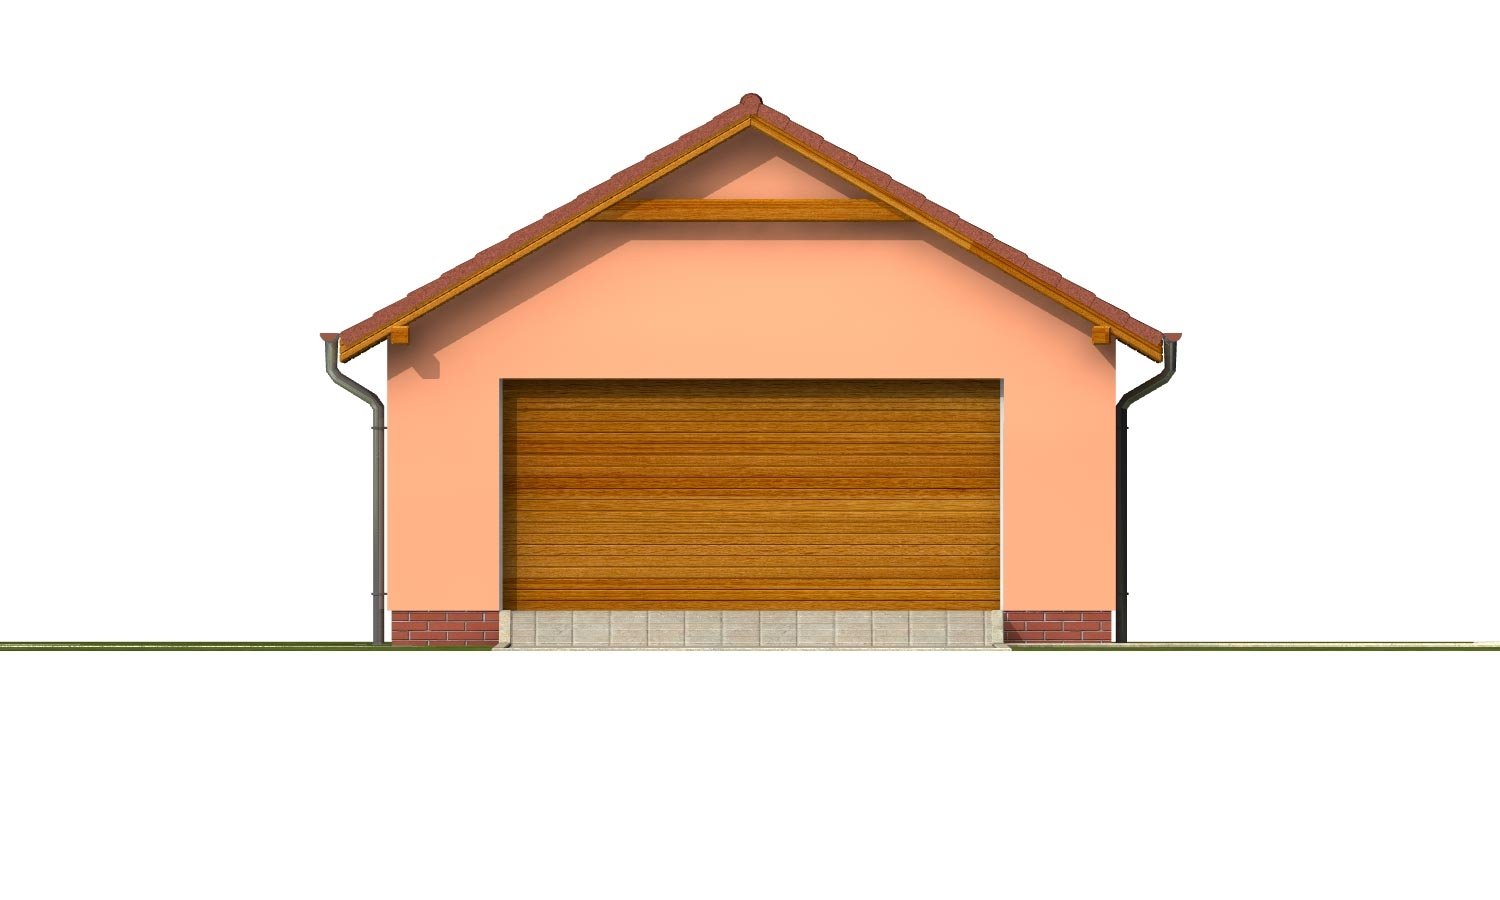 Zrkadlový pohľad 1. - Samostatně stojící dvojgaráž se sedlovou střechou a širokými garážovými vraty